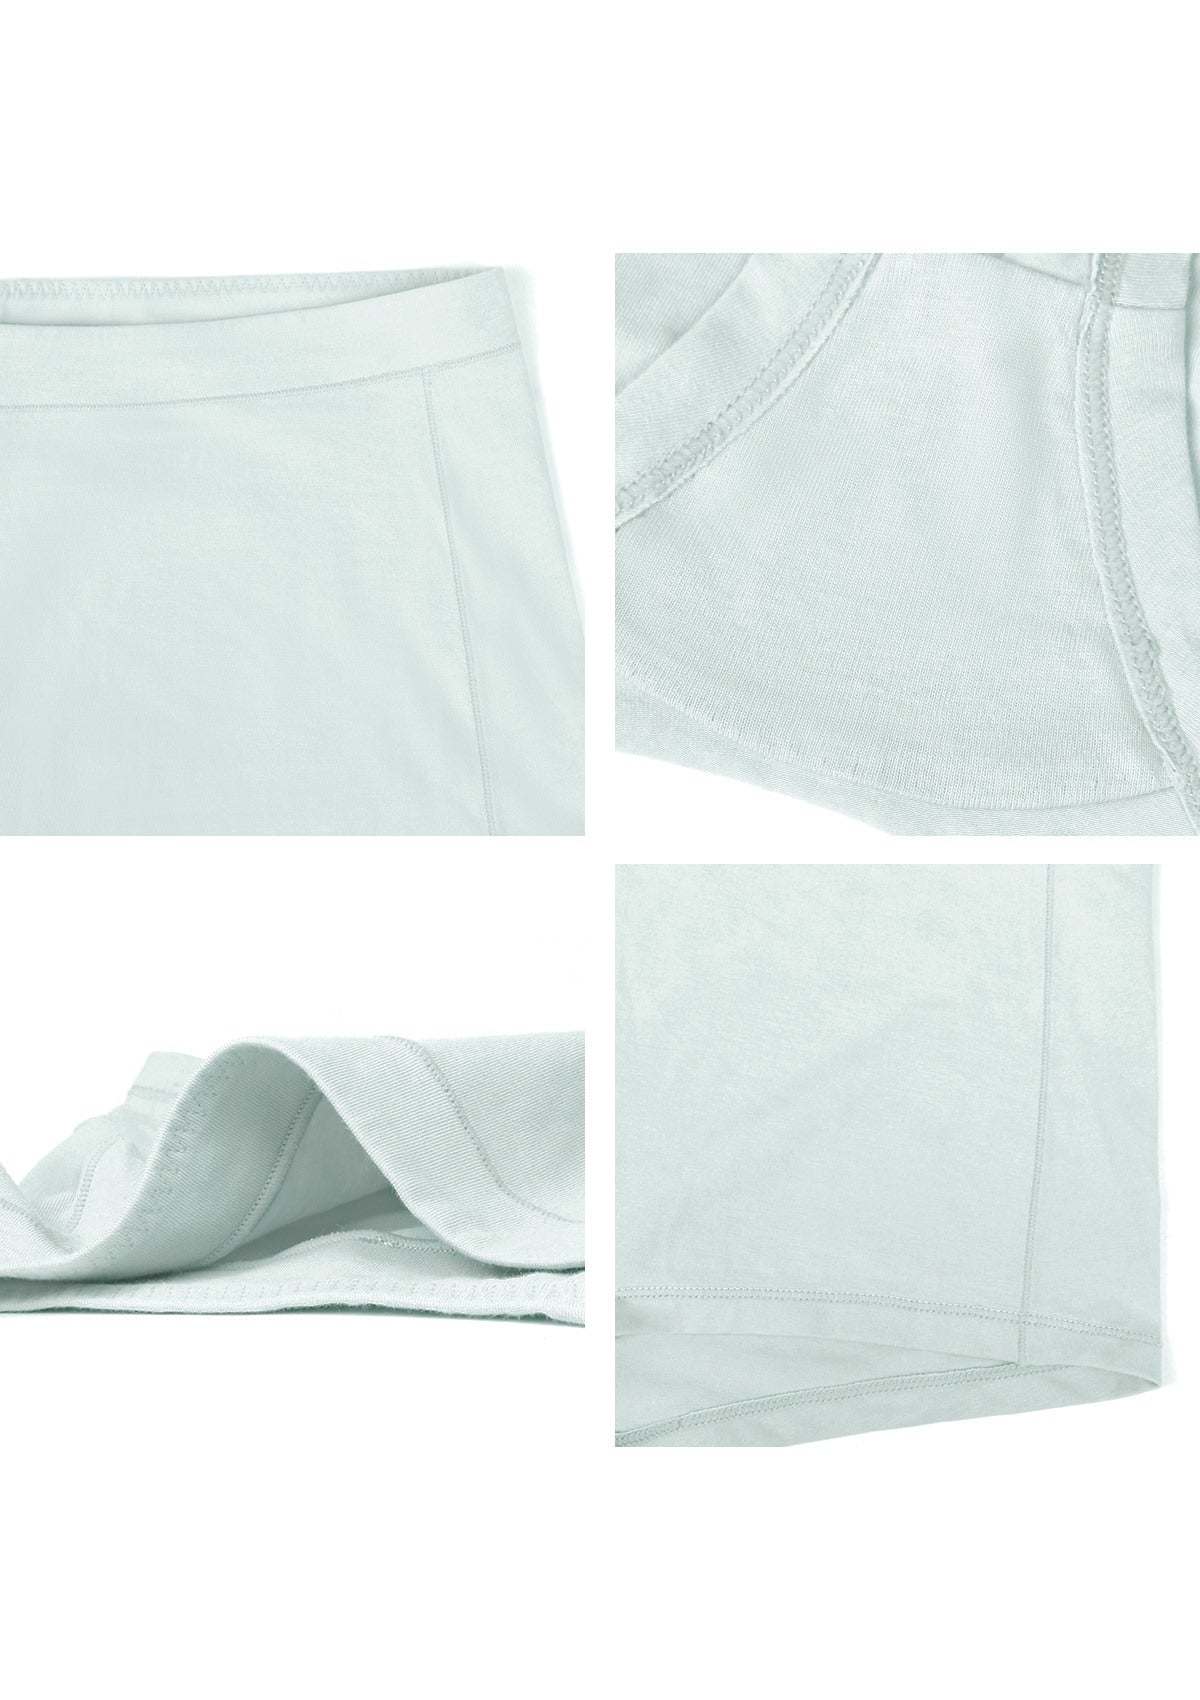 All-Day Comfort Mid-Rise Cotton Boyshorts Underwear 3 Pack - XXL / Black+Beige+Green